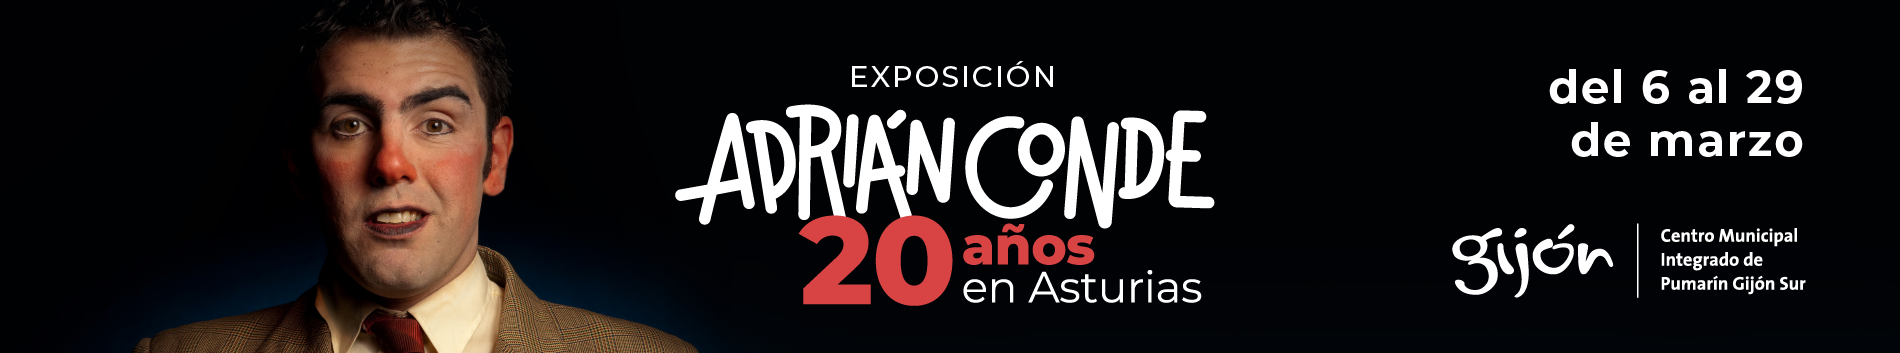 Exposición en Gijón: "Adrián Conde, 20 años en Asturias"